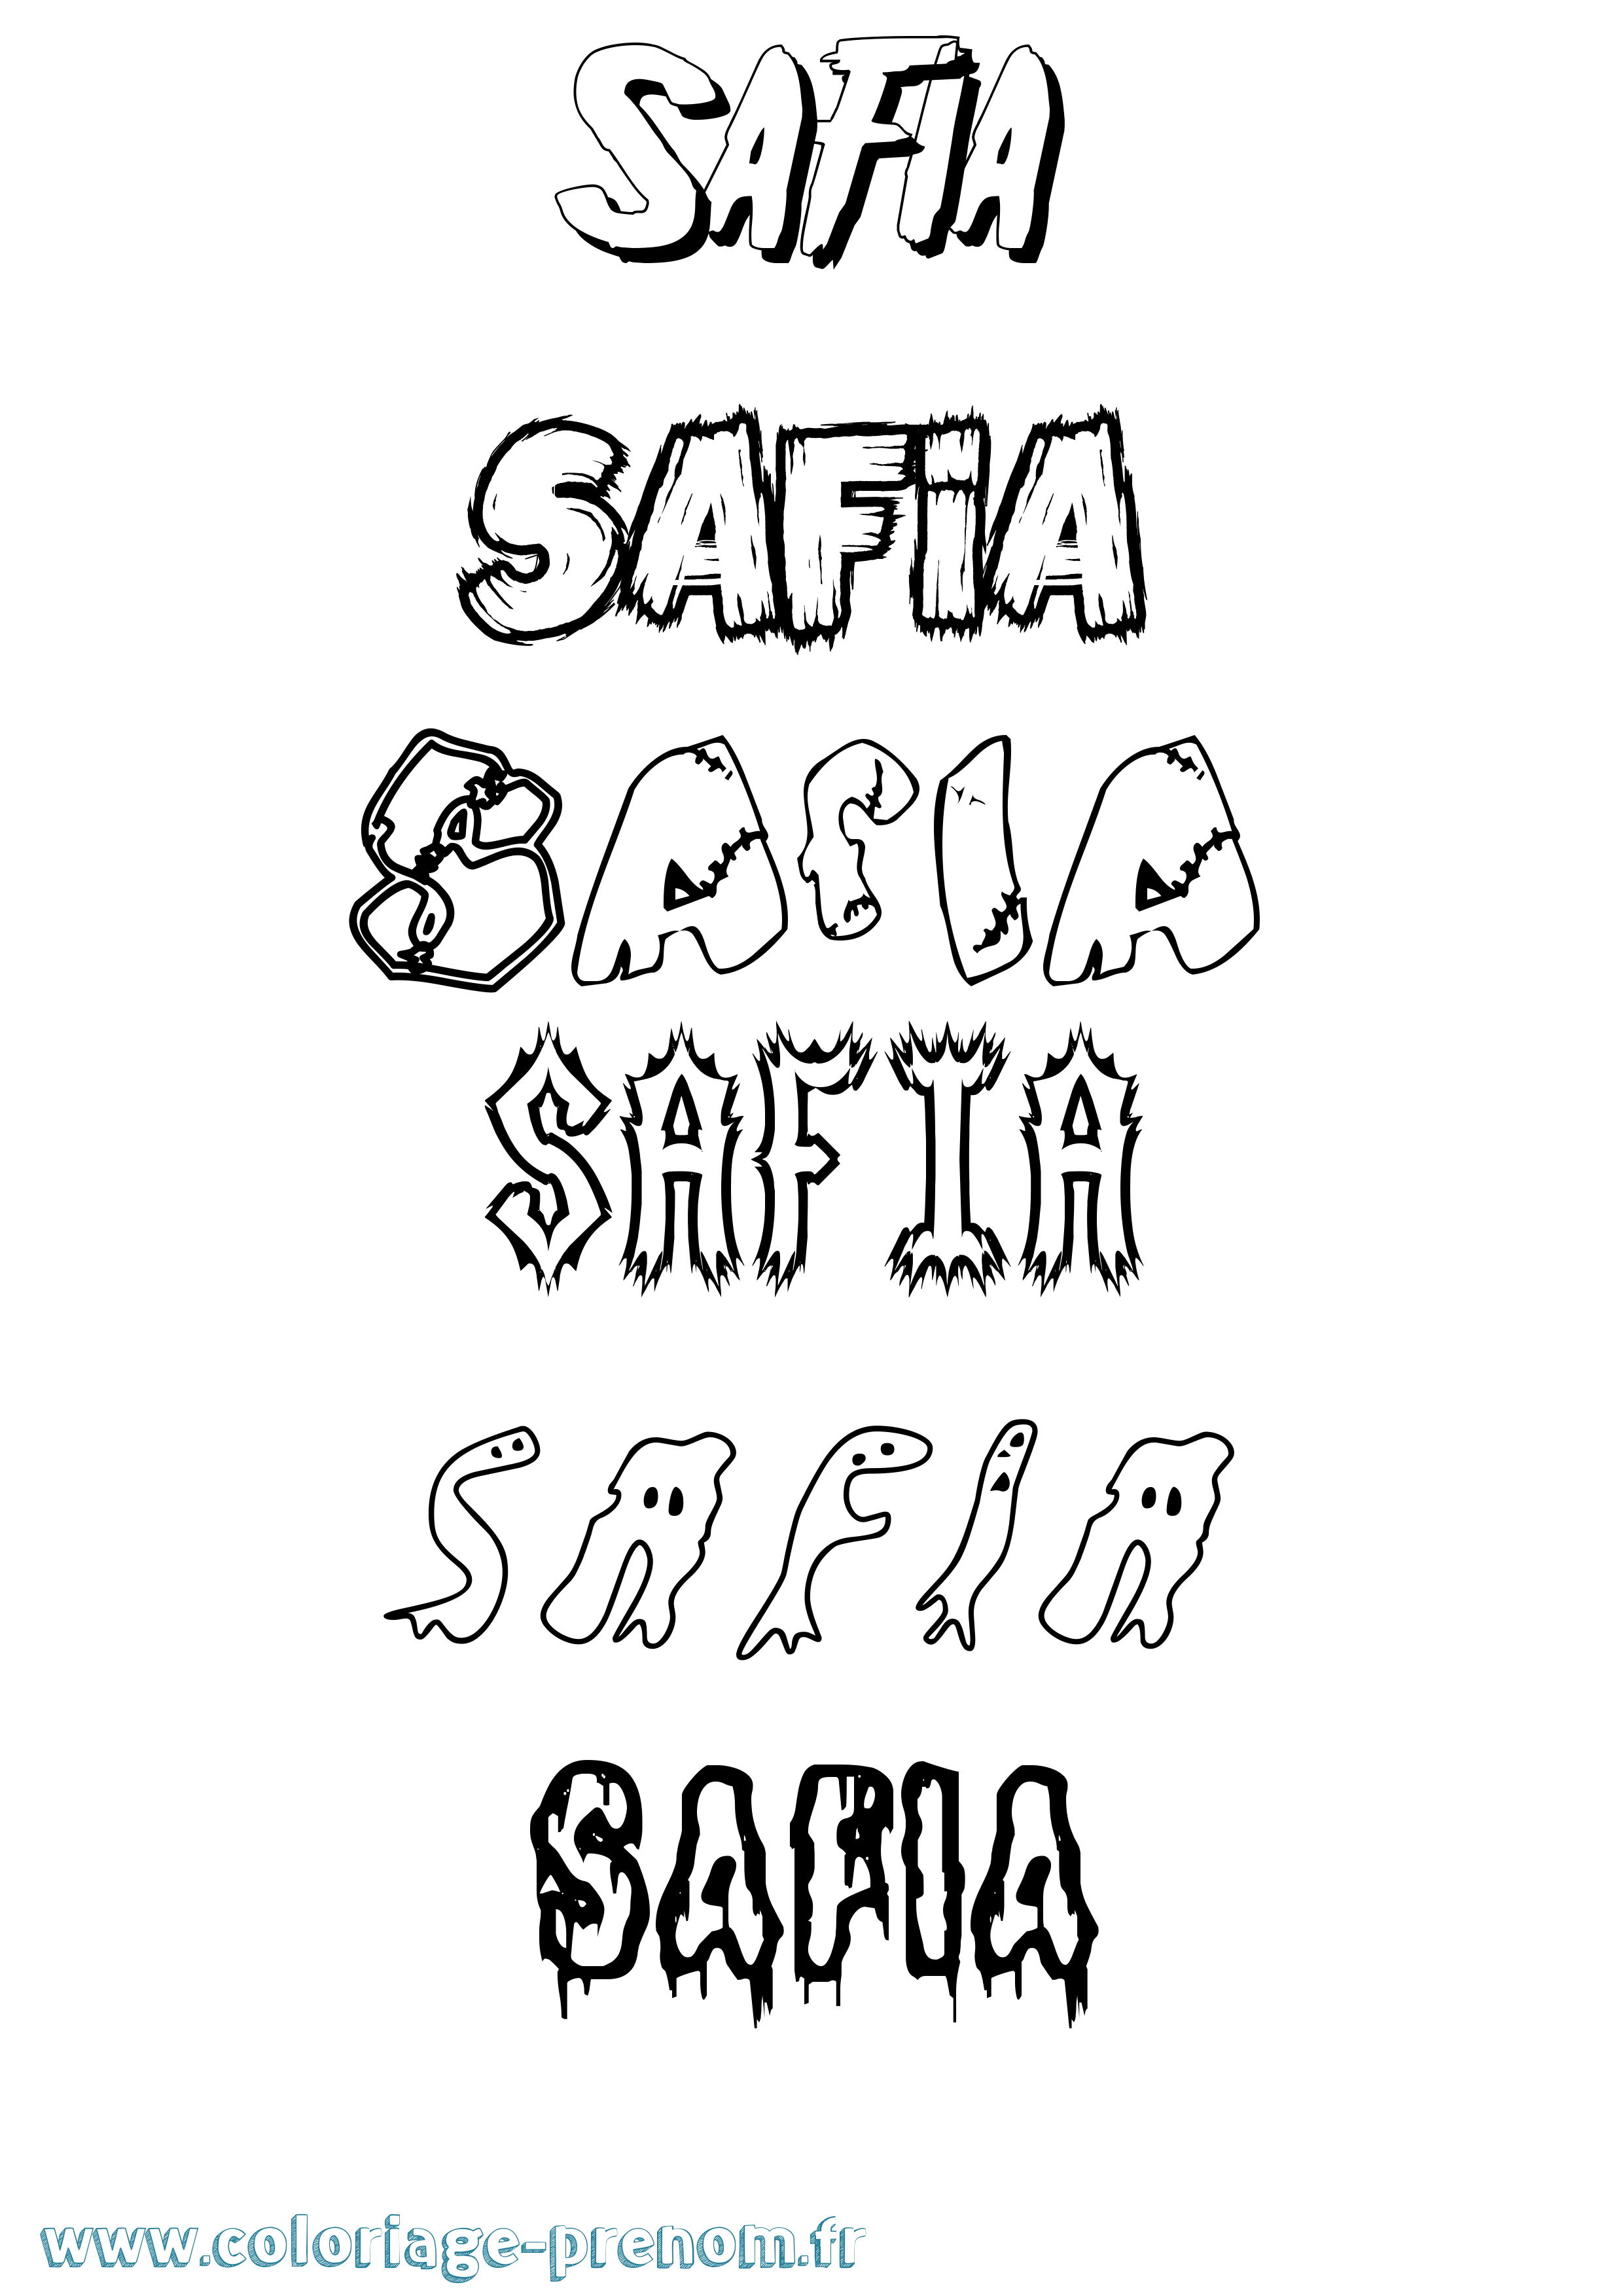 Coloriage prénom Safia Frisson